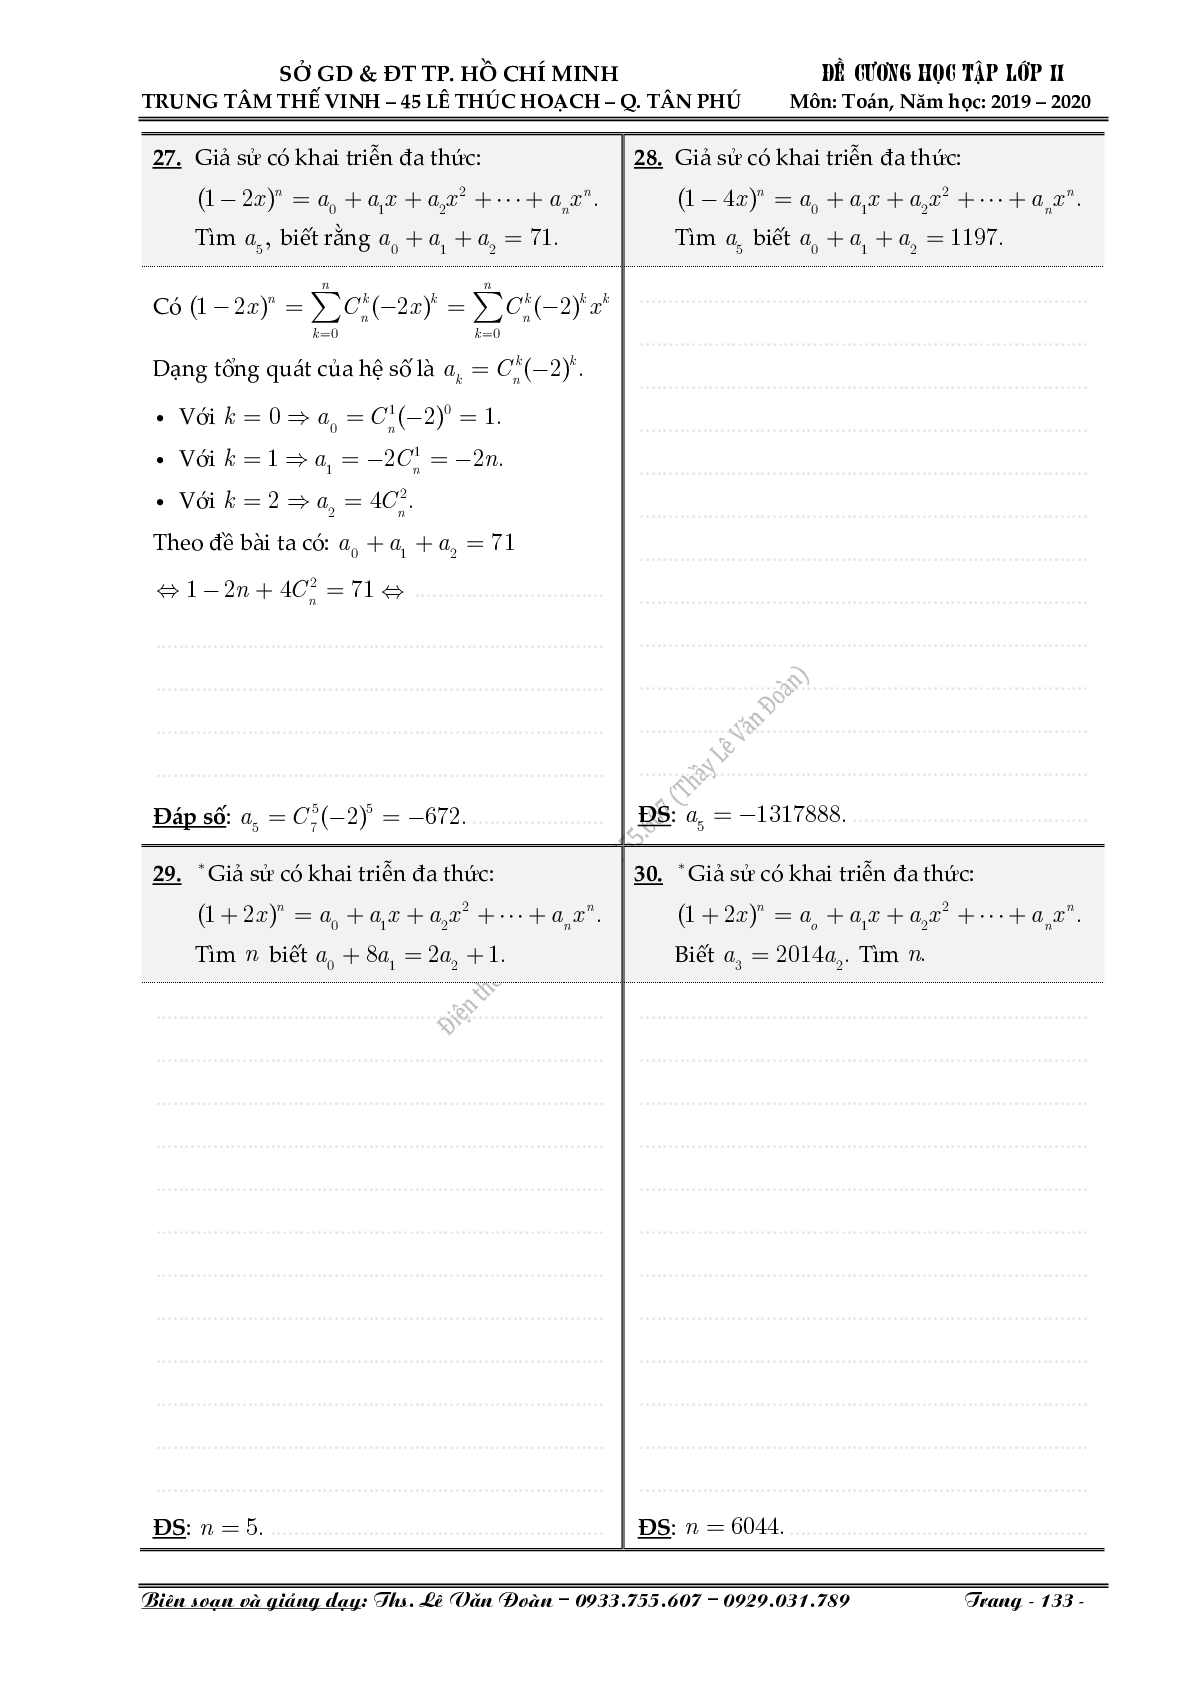 Chuyên đề nhị thức Newton (Niu-tơn) (trang 7)